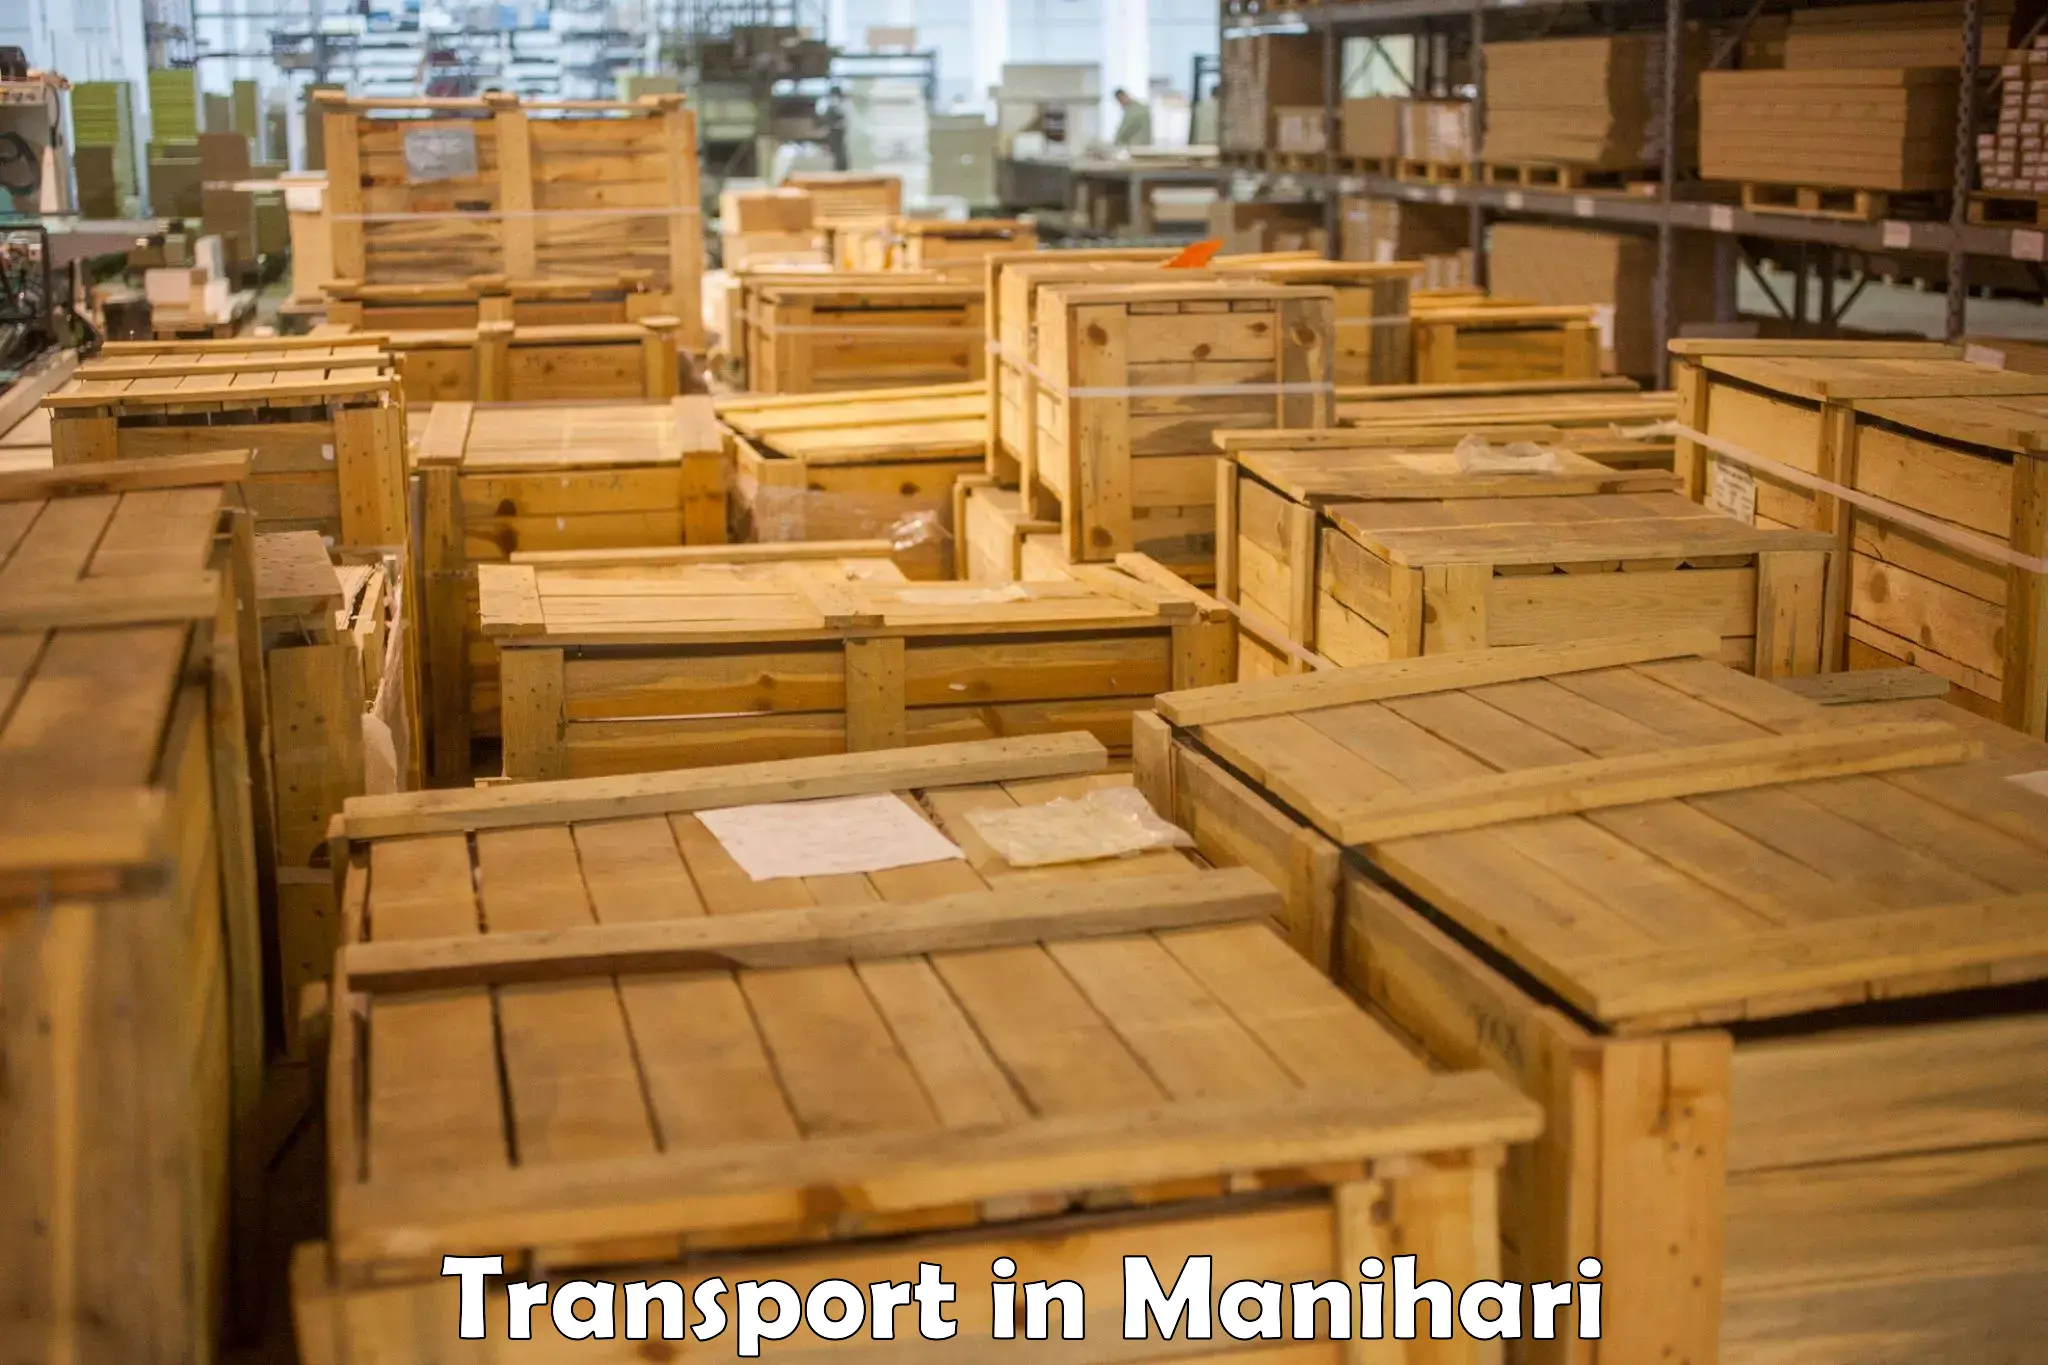 Interstate goods transport in Manihari